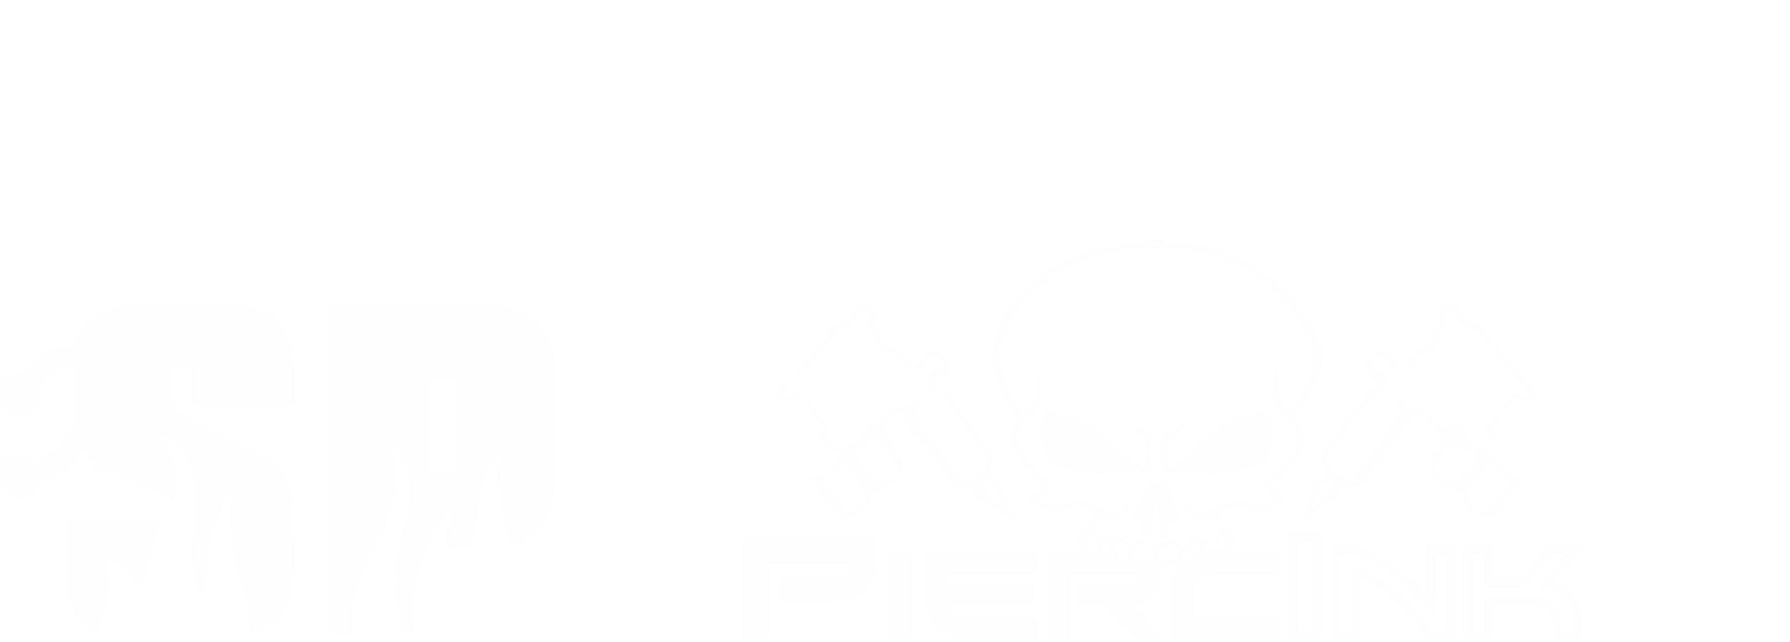 Steve Pierce Logo